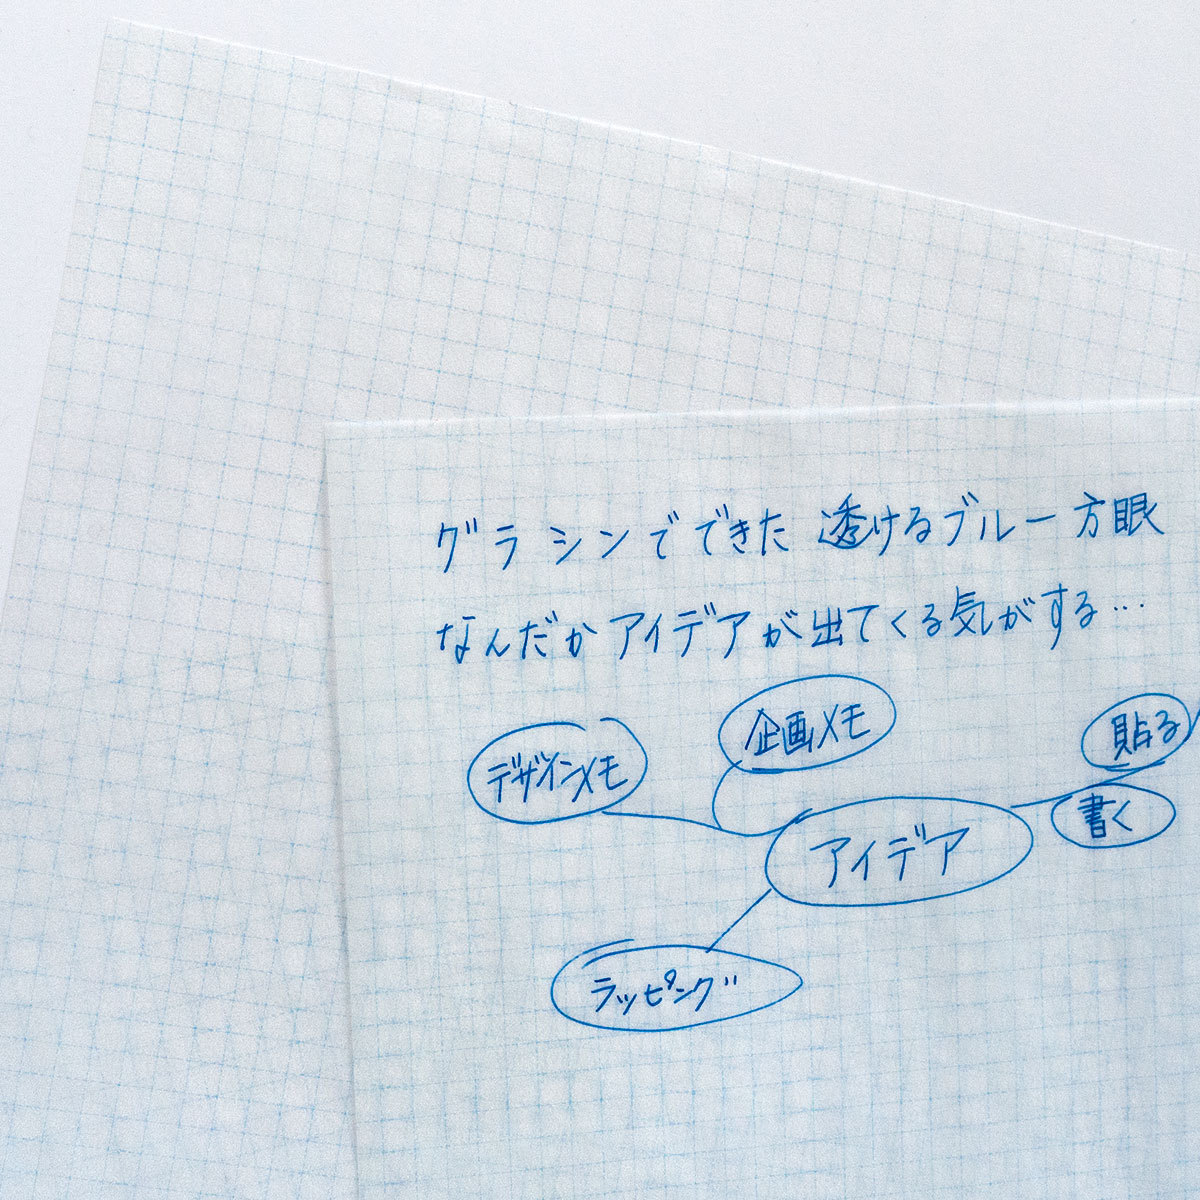 A4glasin бумага диаграммная бумага рисунок 20 листов входит 5mm голубой person глаз обложка для книги упаковка дизайн бумага незначительный лист бумага 